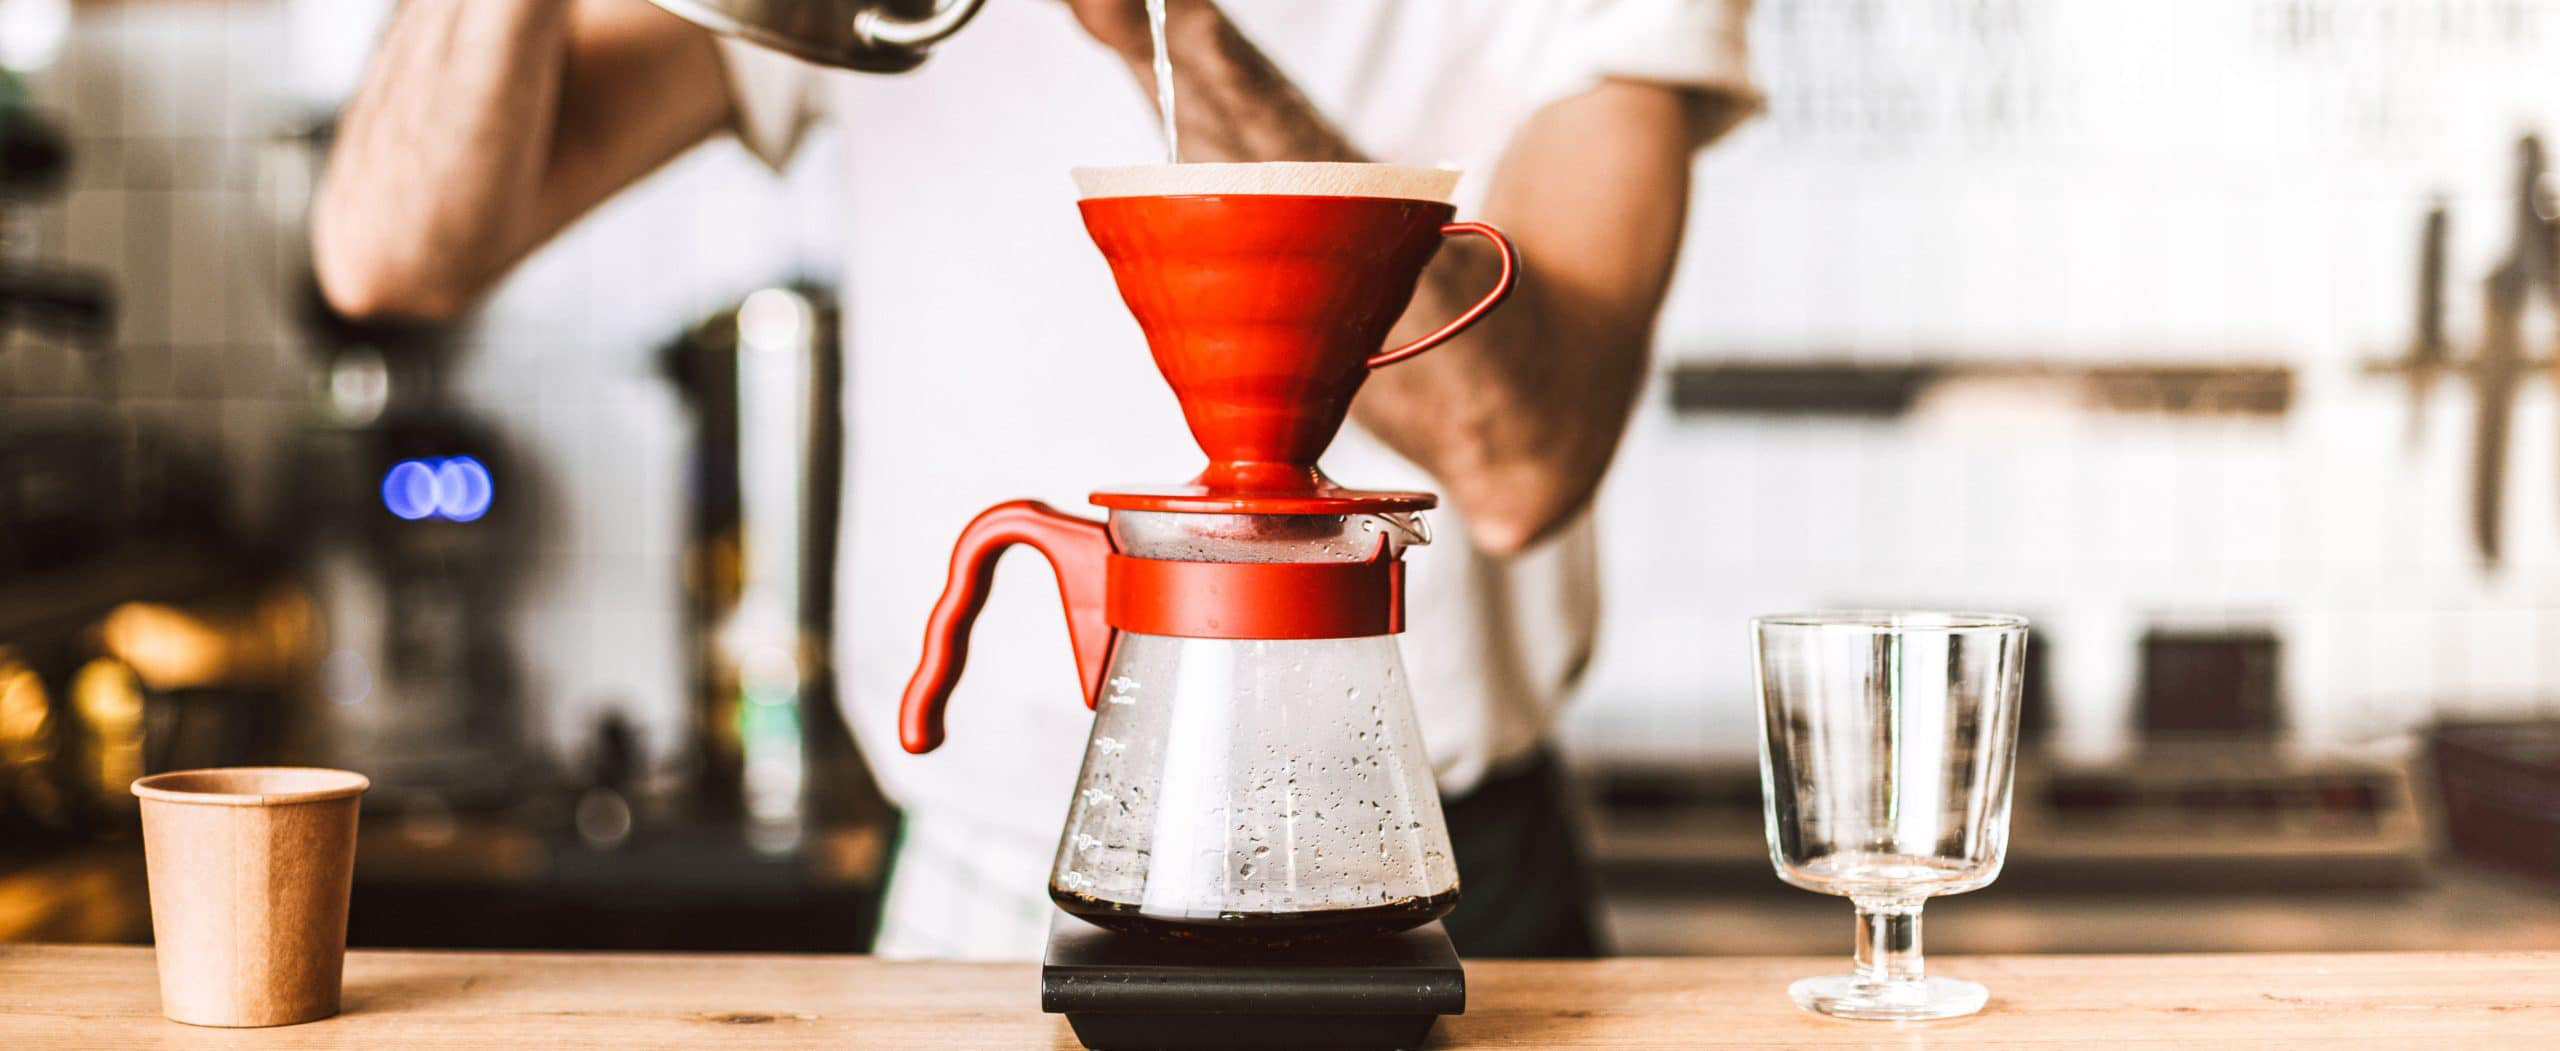 روش دم کردن قهوه V60: راهنمای کامل برای دم اوری قهوه و استخراج بهترین عطر و طعم قهوه